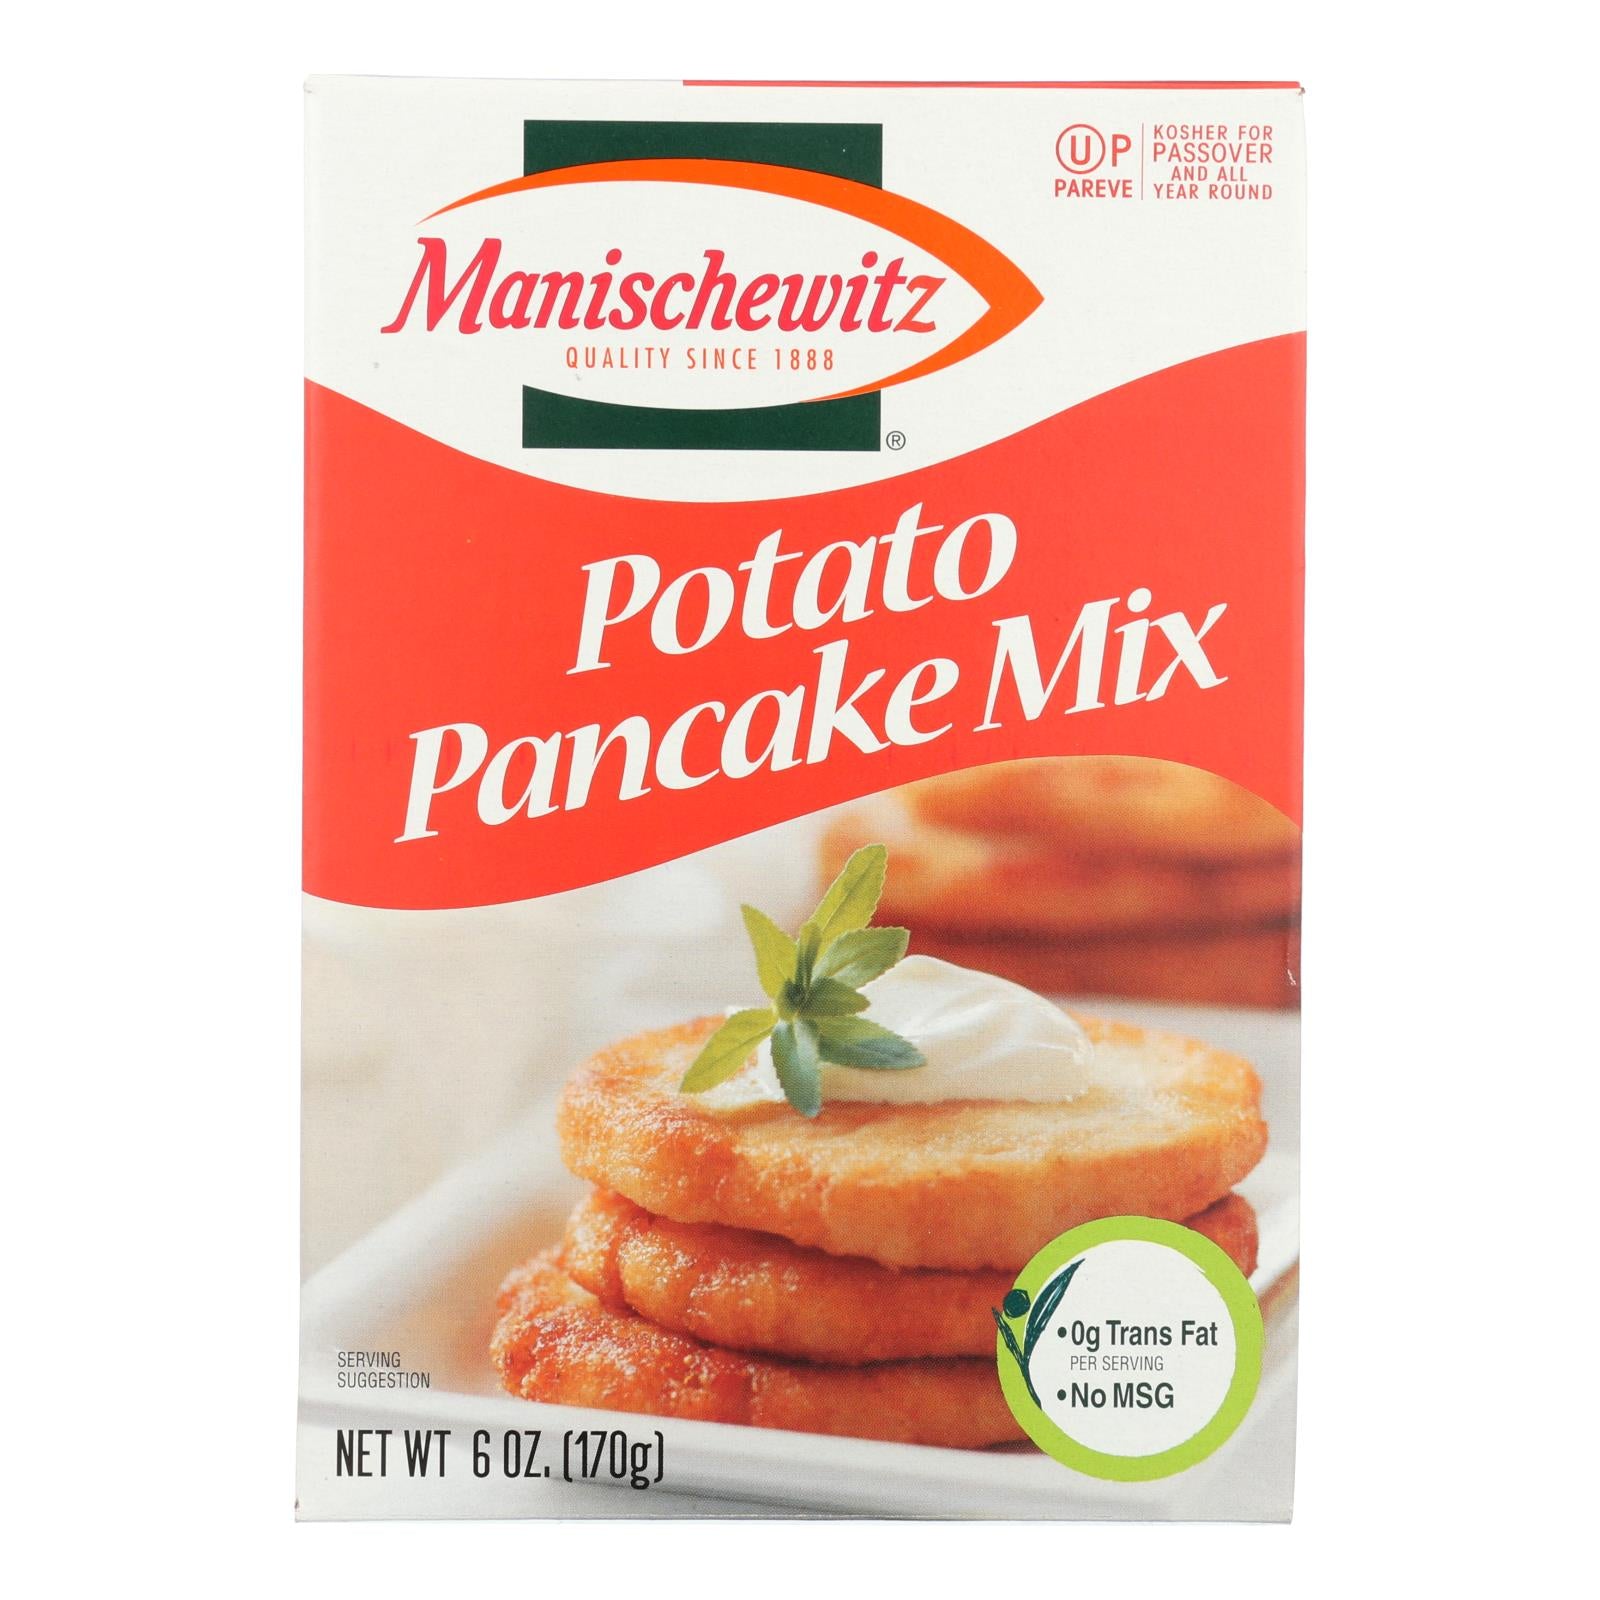 Manischewitz - Potato Pancake Mix - Case Of 12 - 6 Oz.